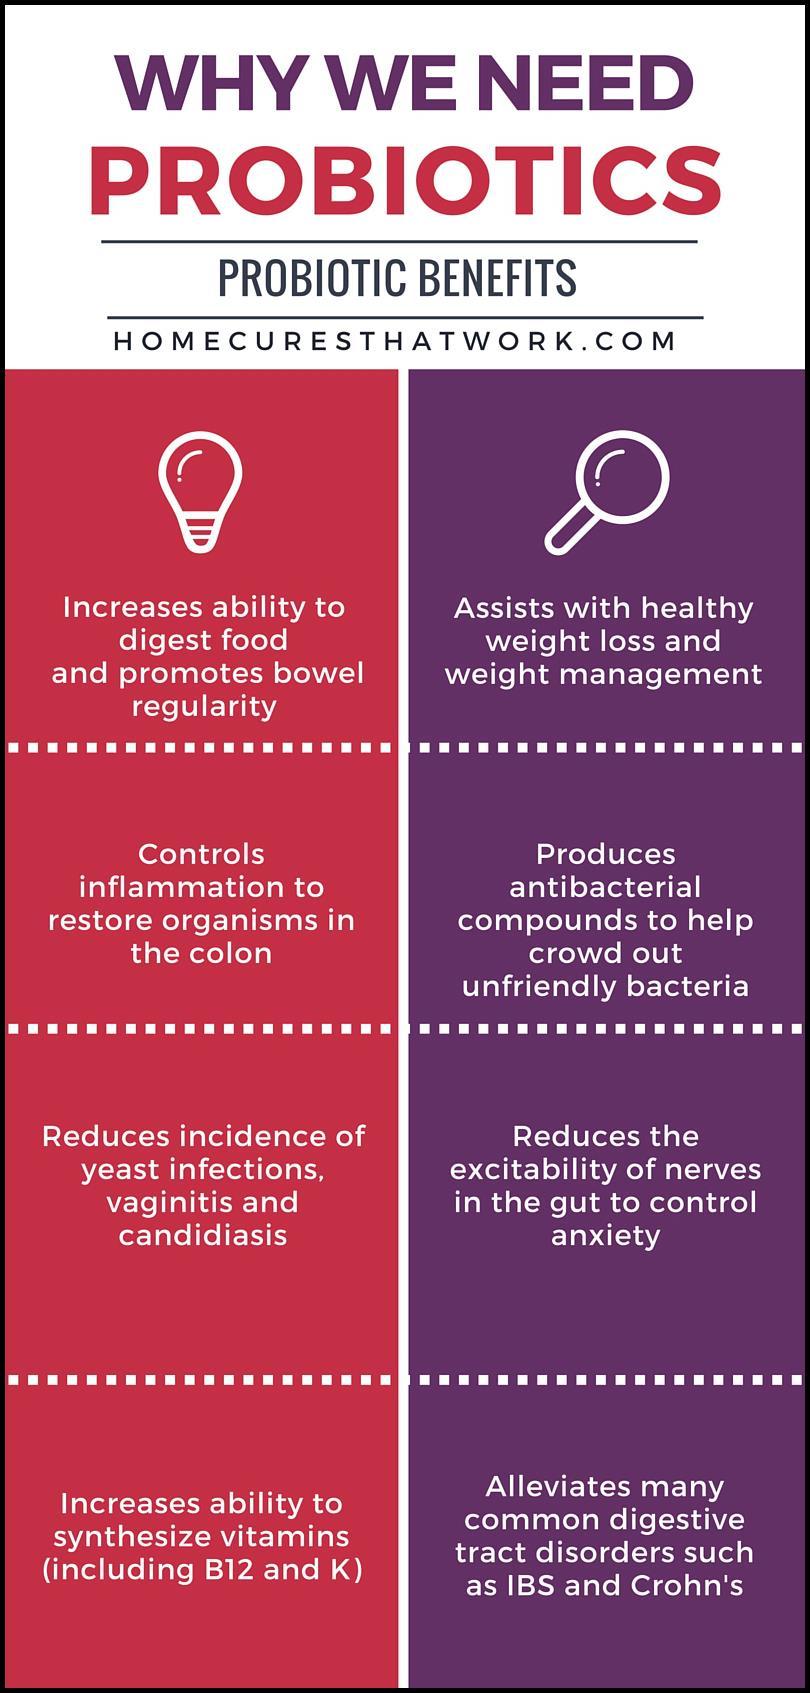 Κυριότερες ωφέλειες προβιοτικών στην υγεία Ρυθμίζουν τη μικροχλωρίδα του εντέρου υπέρ των ωφέλιμων μ/ο και καταπολεμούν παθογόνα μικρόβια [αποτροπή διάρροιας τροφικών ασθενειών, αποτροπή